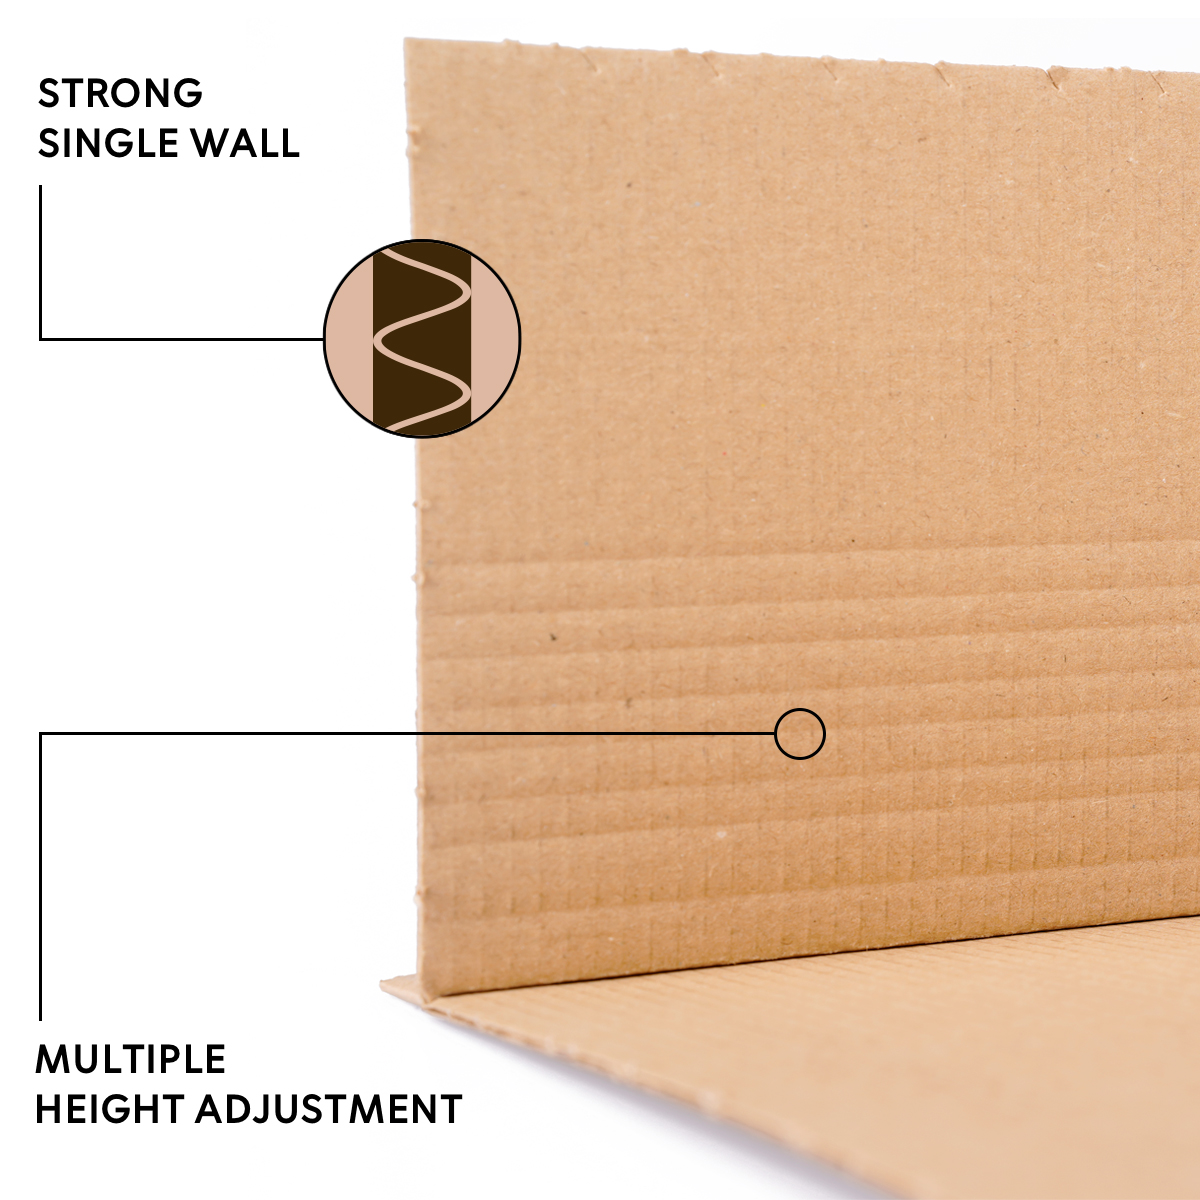 Buchverpackung 217x155x10-50 mm Wickelverpackung aus Pappe DIN A4 braun - BV 1